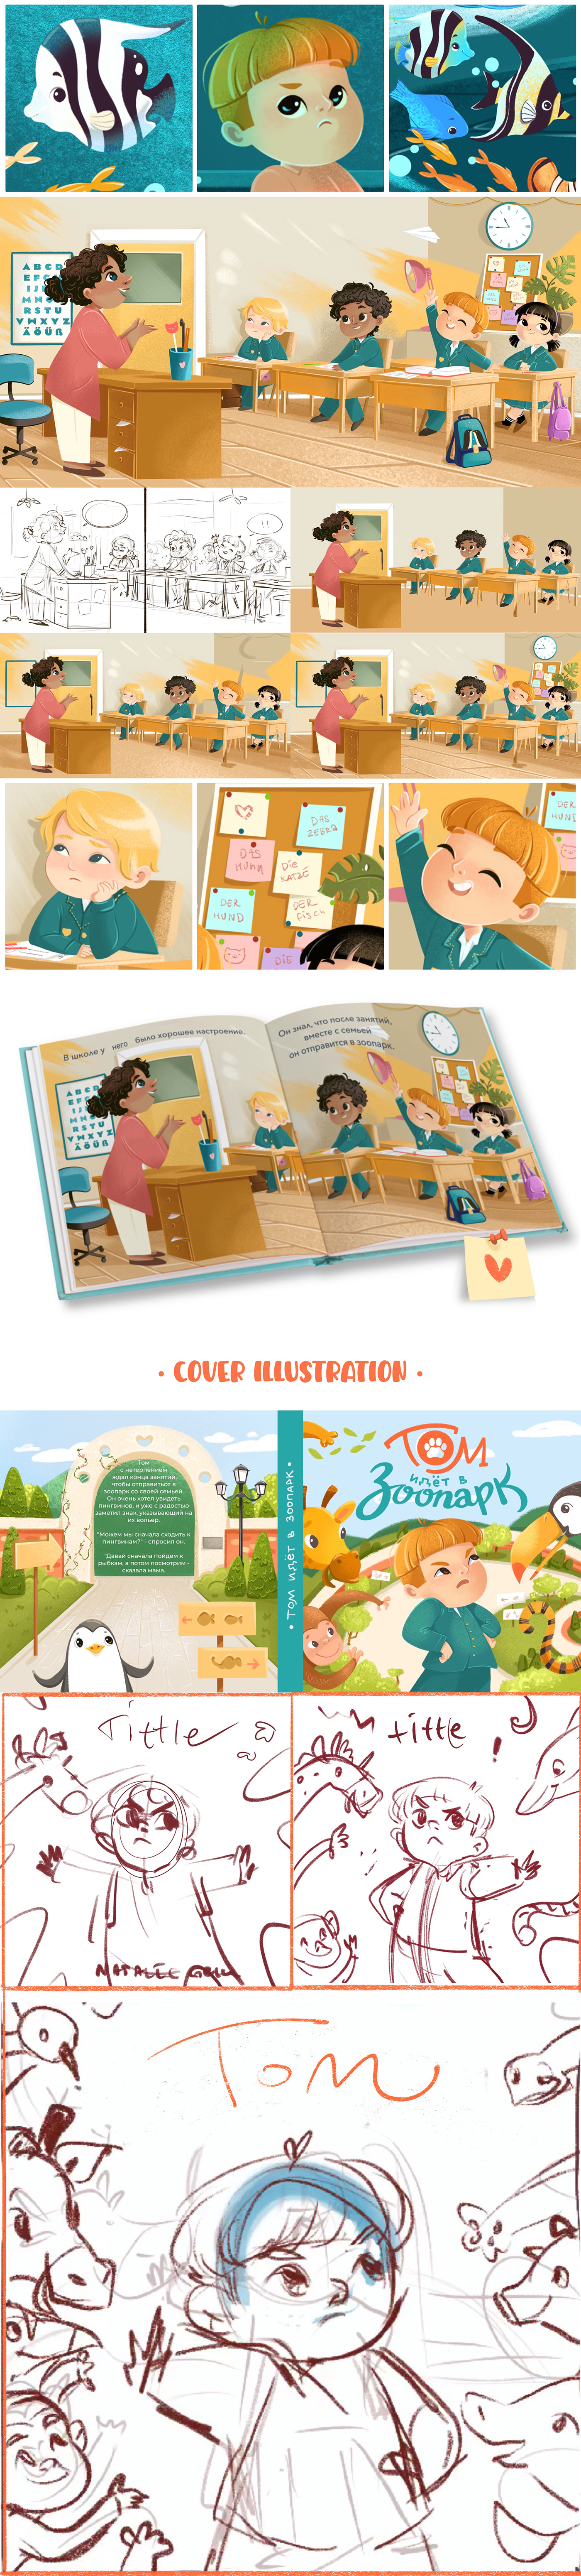 book Kidsbook childrenbook kidlit illustrationkids kidlitart kidsbookillustration bookcoverdesign bookcover illustrationforkids